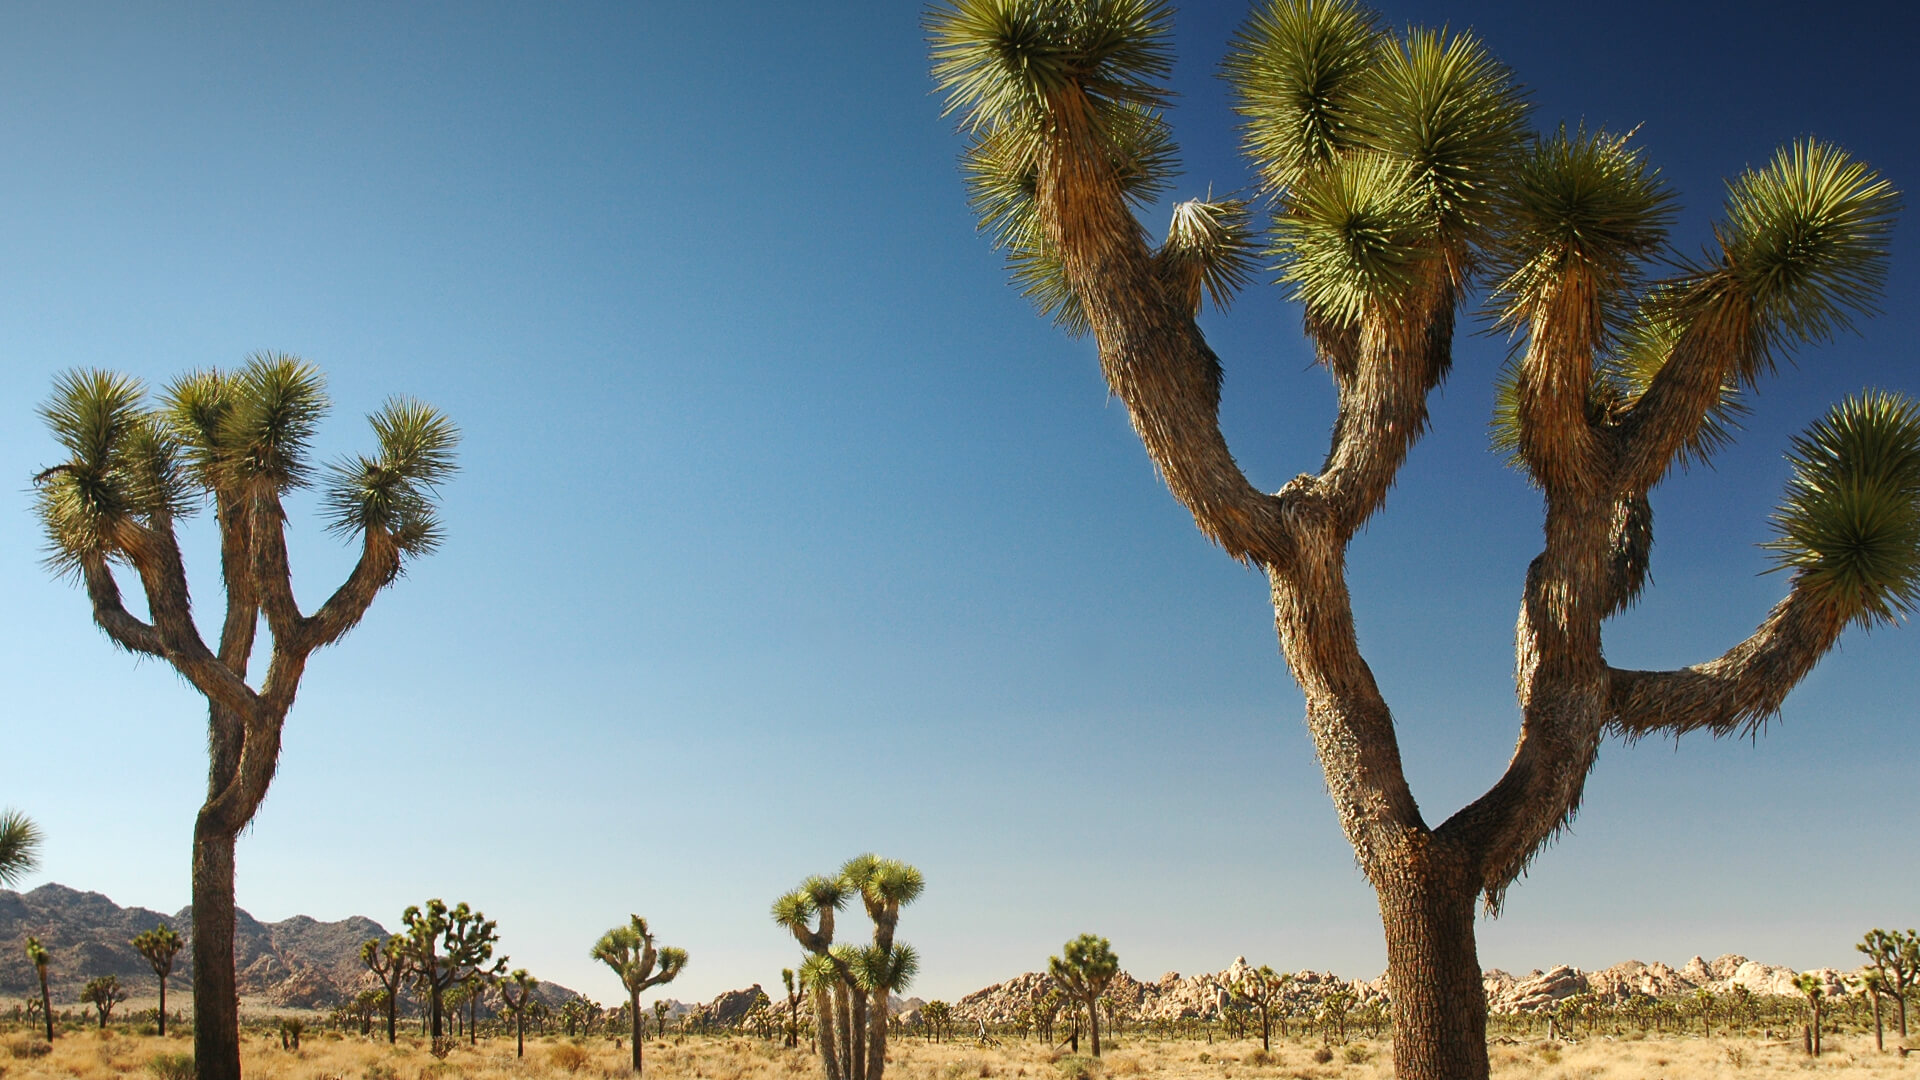 Joshua trees in the Nevada desert.